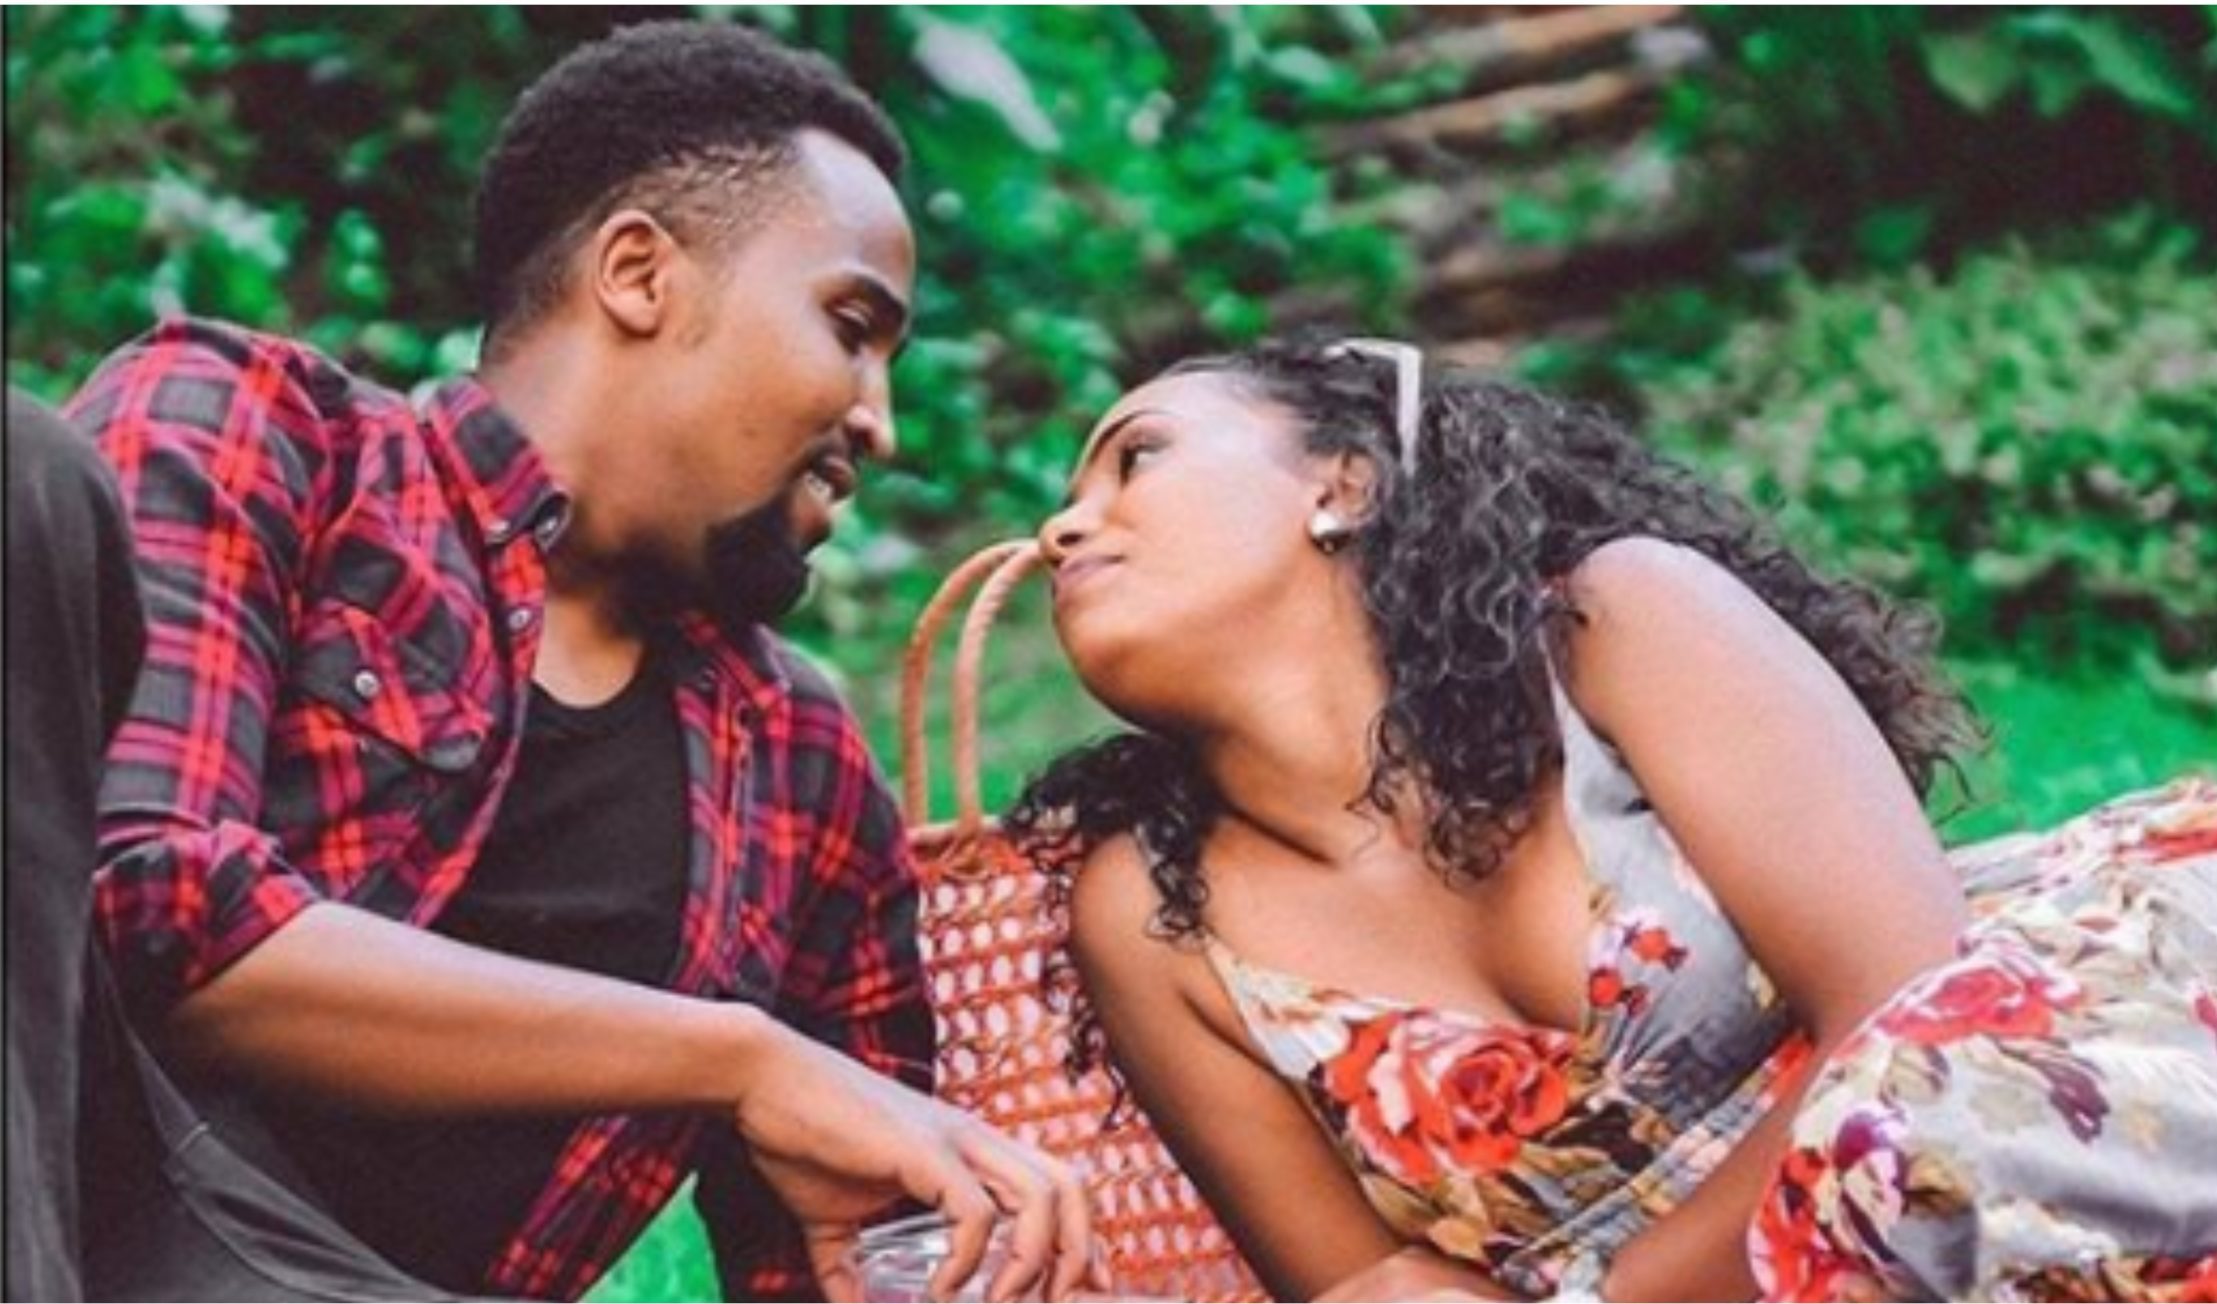 Just like a fairytale: Pascal Tokodi reveals how he met his wife, Grace Ekirapa